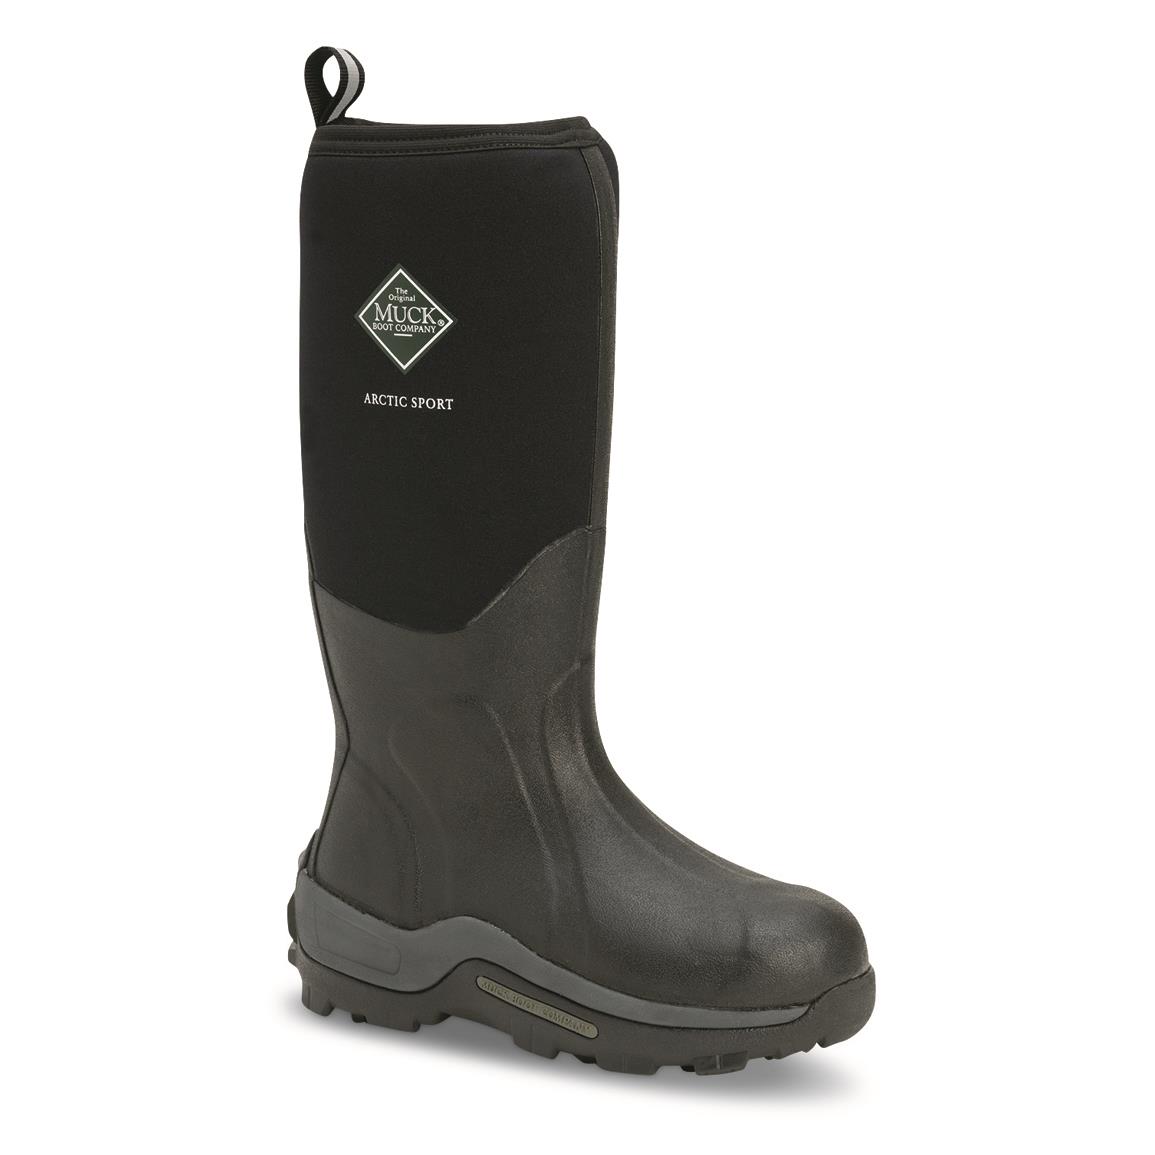 Polar Boot Womens Original Tall Muck Winter Snow Waterproof Rain Wellingtons Boots